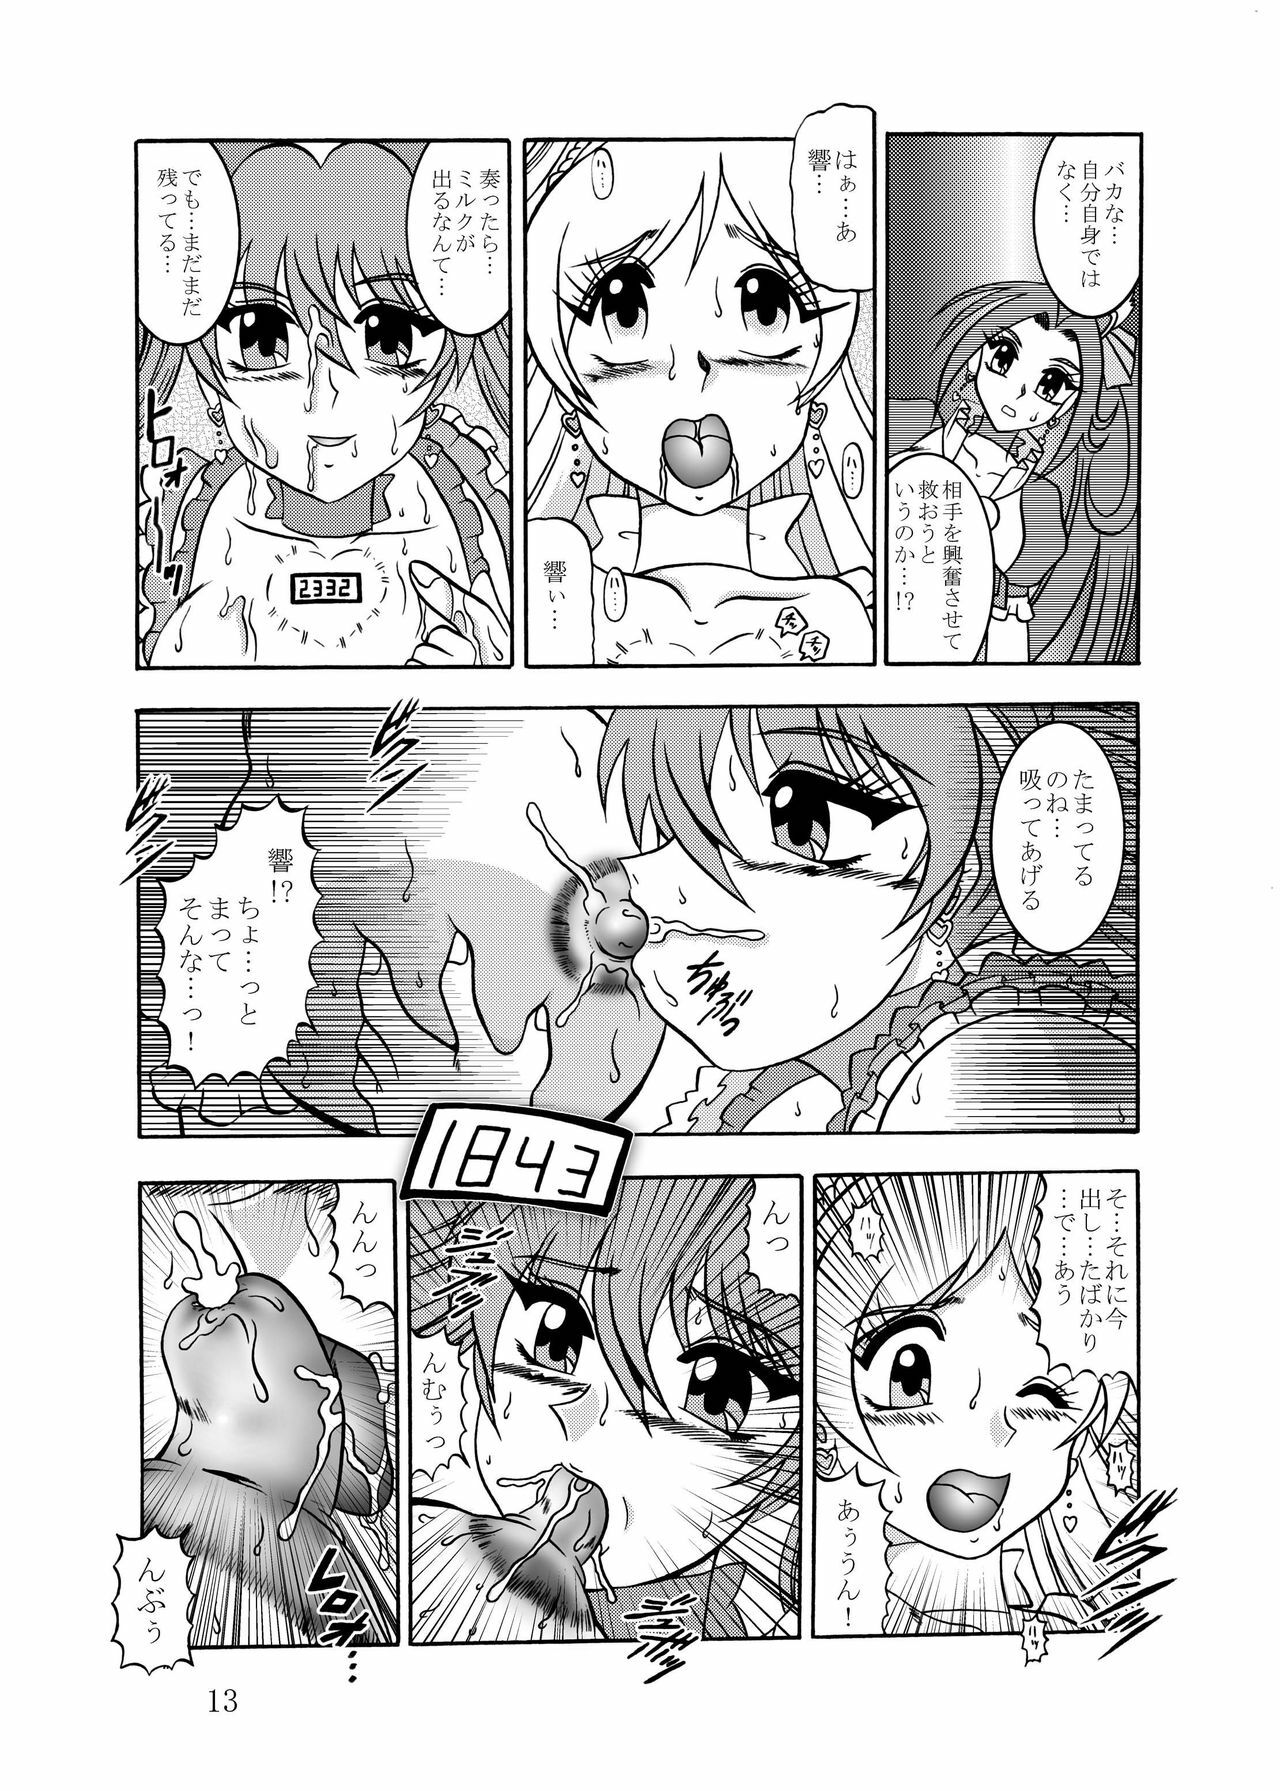 [Studio Kyawn] Kyouen ~Danger MELODY (Suite Precure) page 13 full